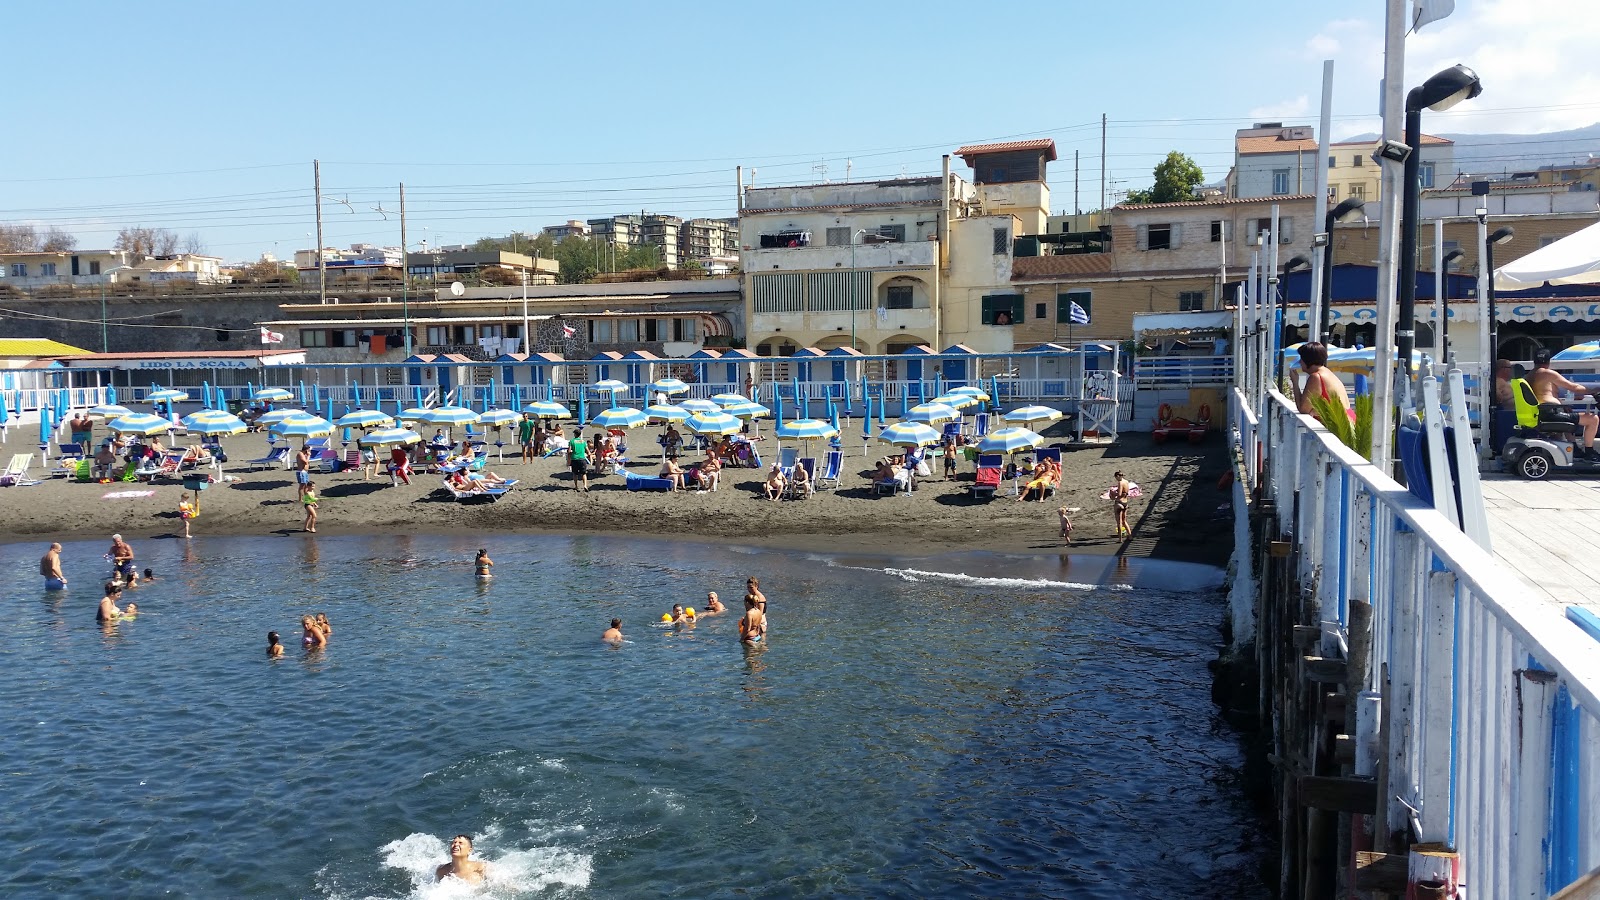 Foto av Spiaggia di via Calastro med medium nivå av renlighet